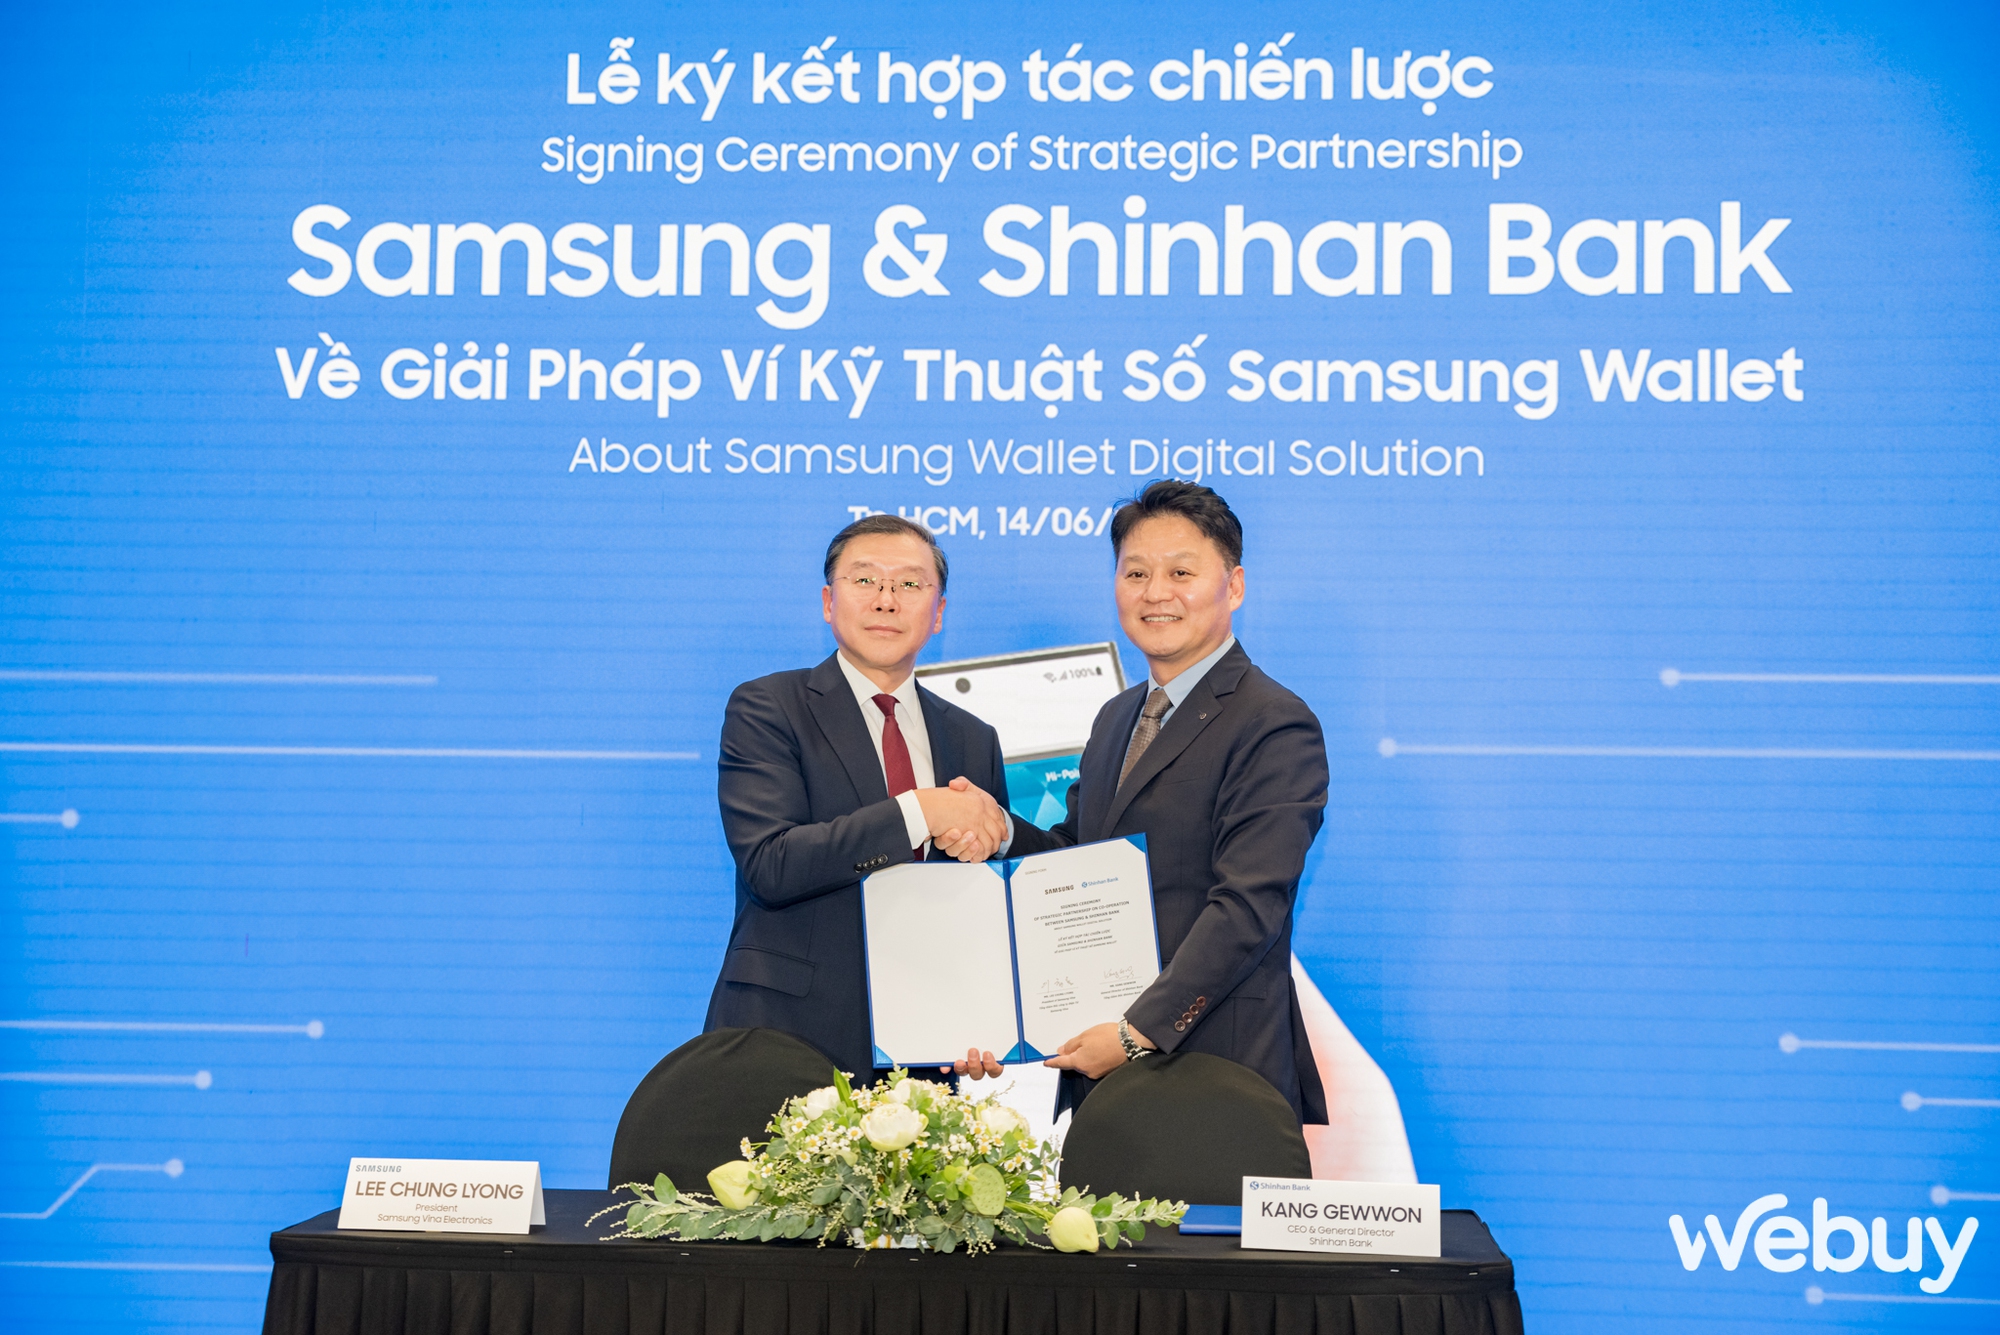 Samsung “bắt tay” Shinhan Bank, đẩy mạnh triển khai ví kỹ thuật số Samsung Wallet đến người tiêu dùng Việt - Ảnh 1.